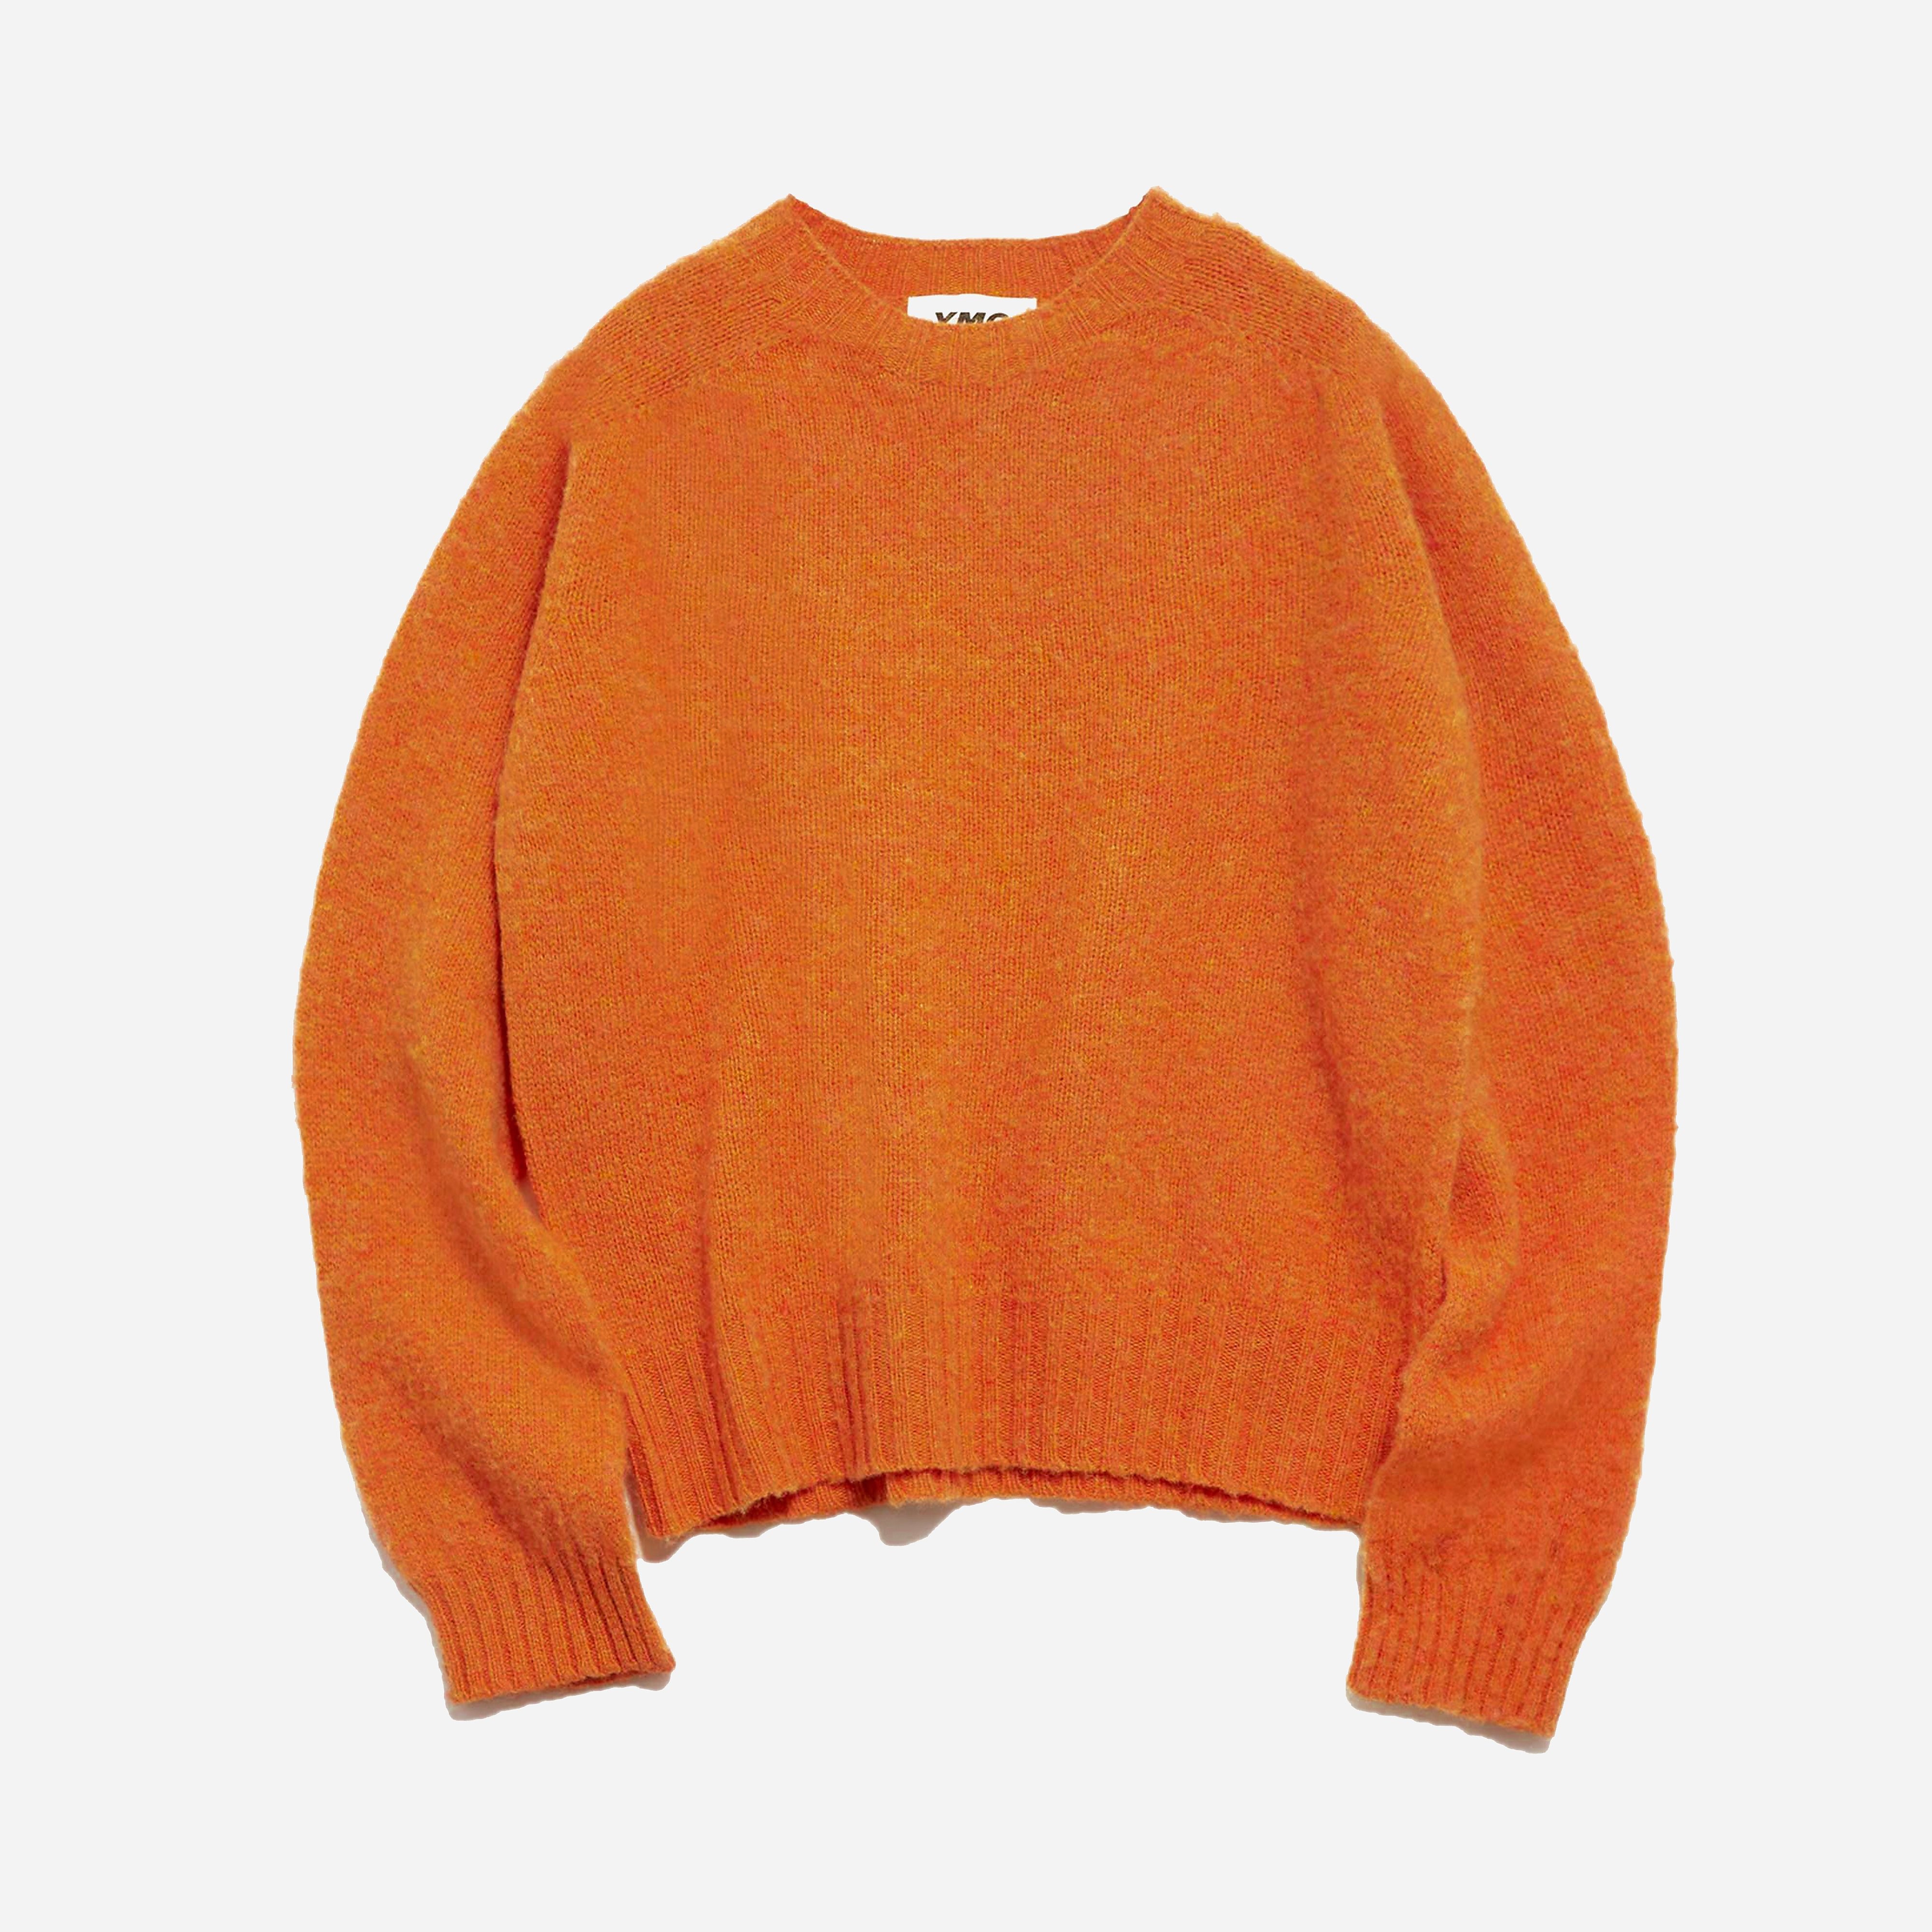 ymc earth jets knitted sweatshirt women's, orange